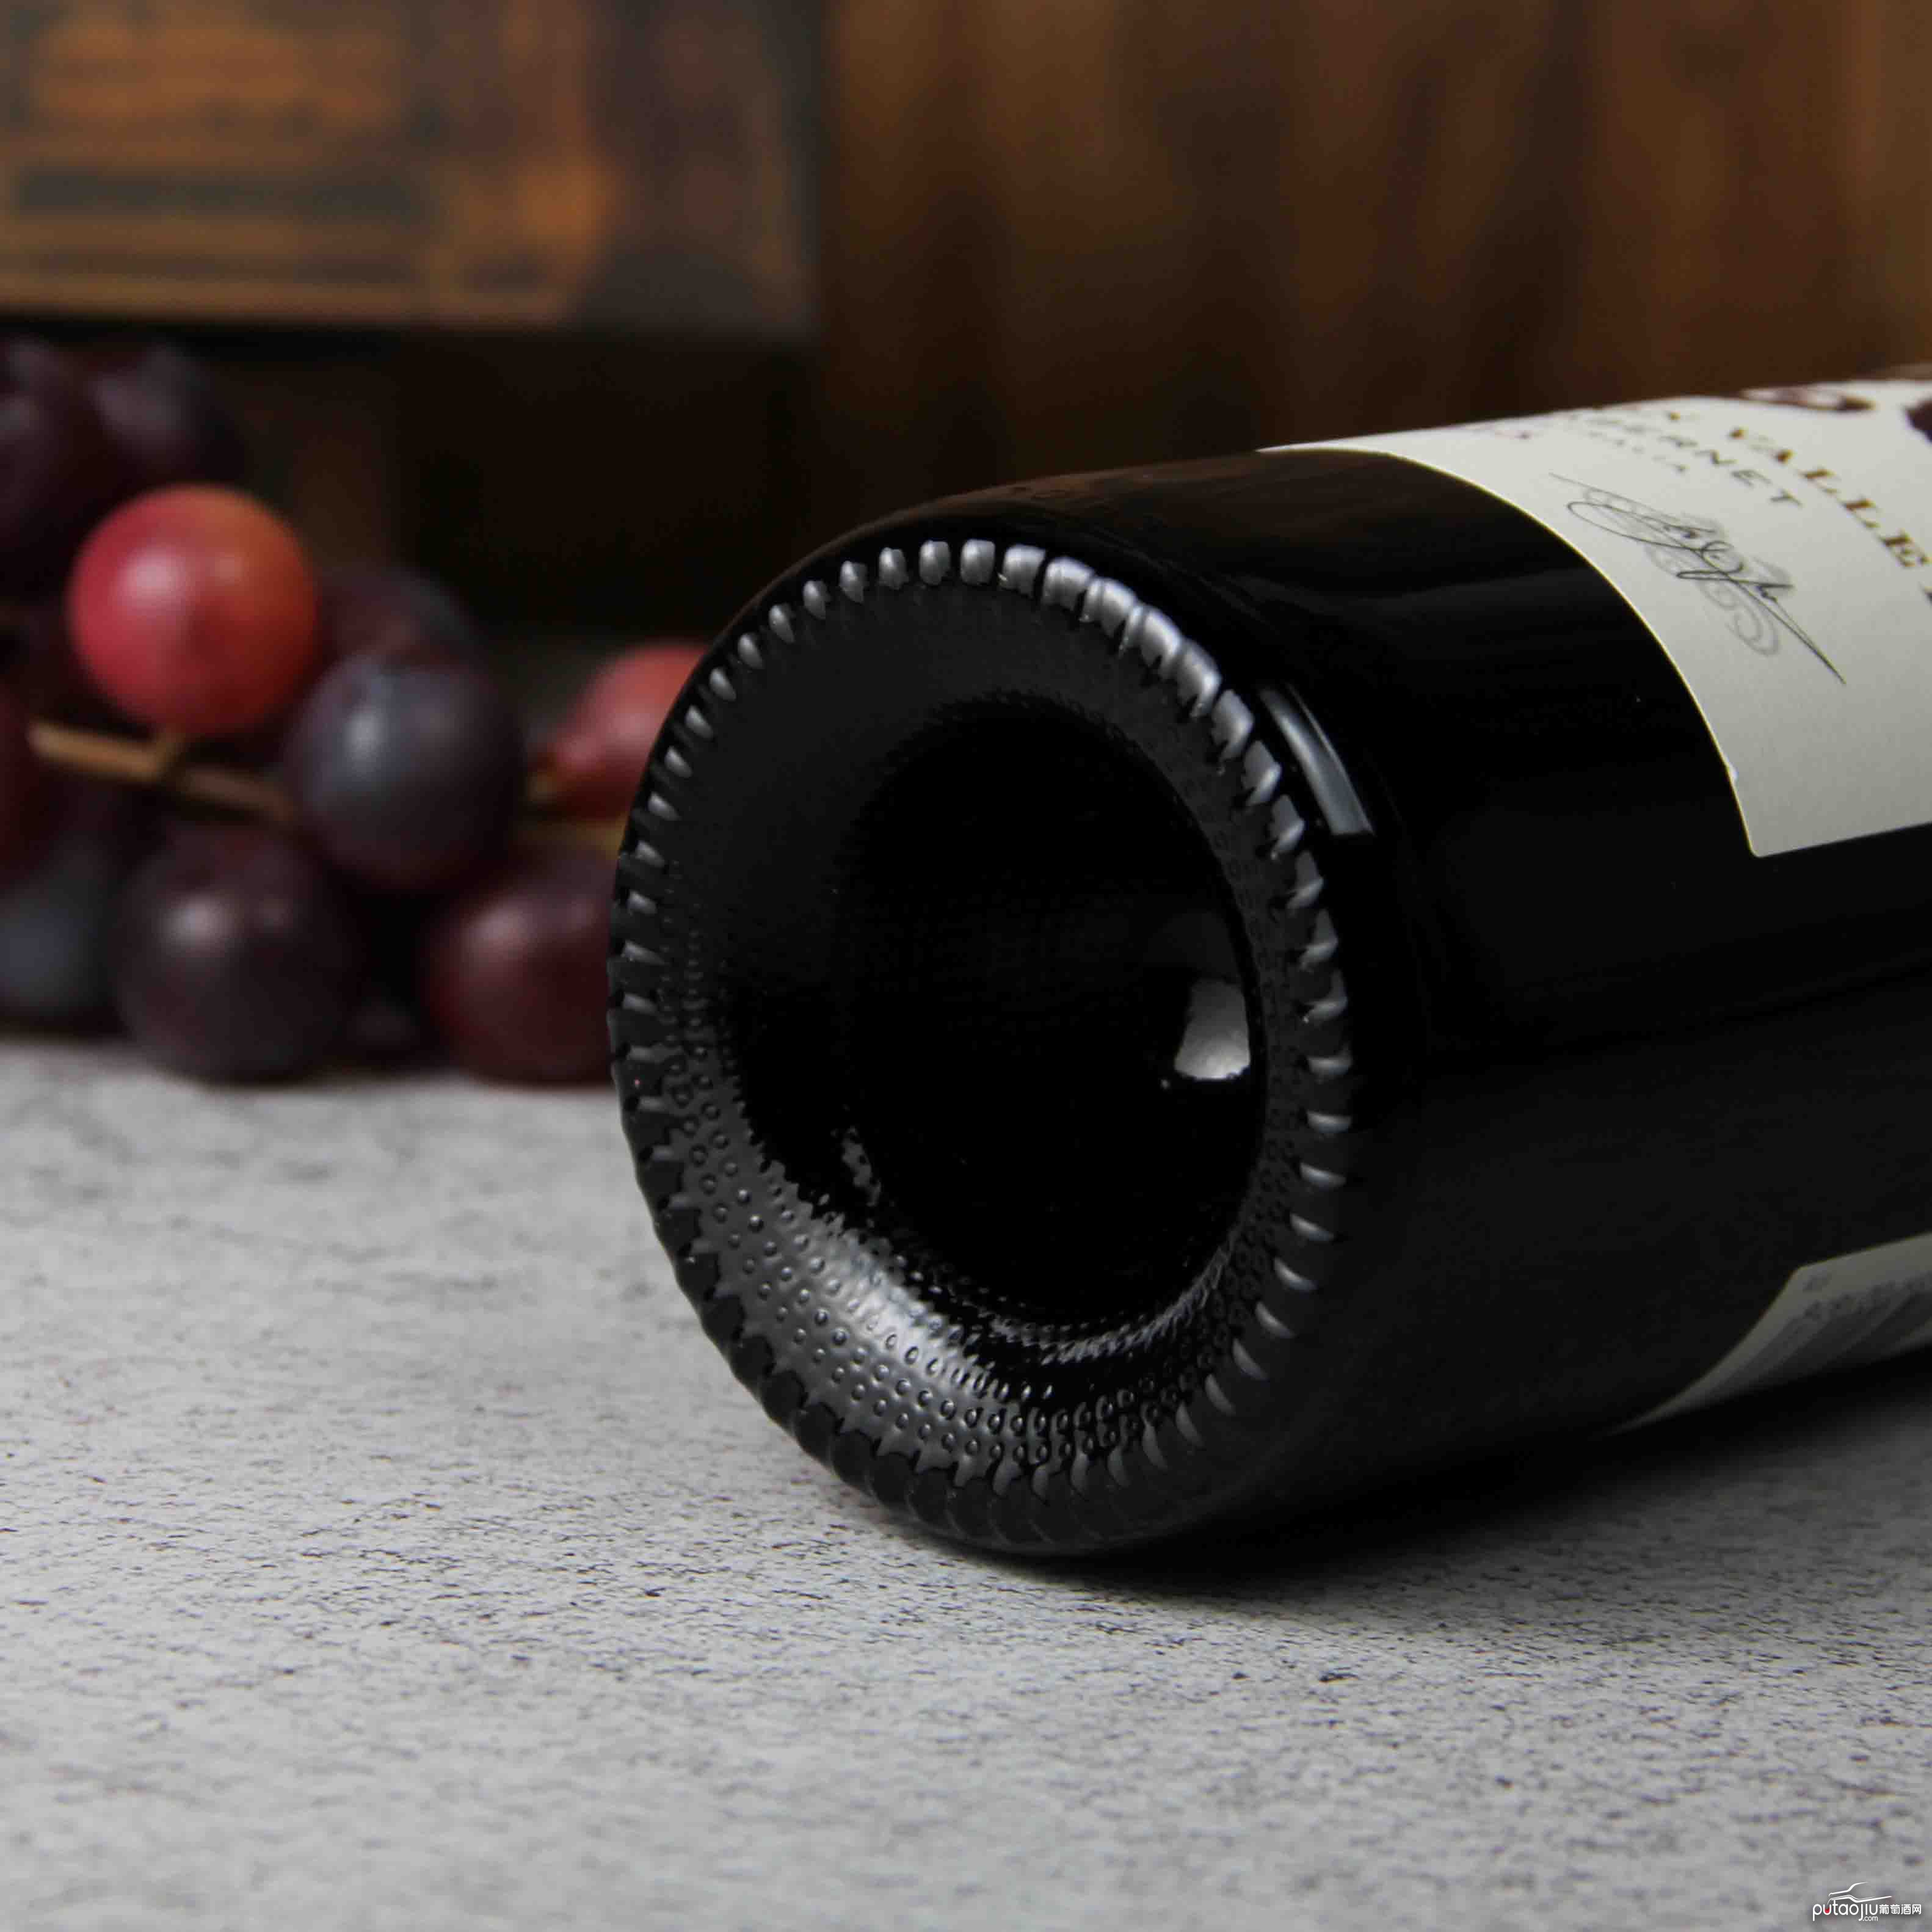 澳大利亚 南澳海龙园西拉赤霞珠红葡萄酒2015